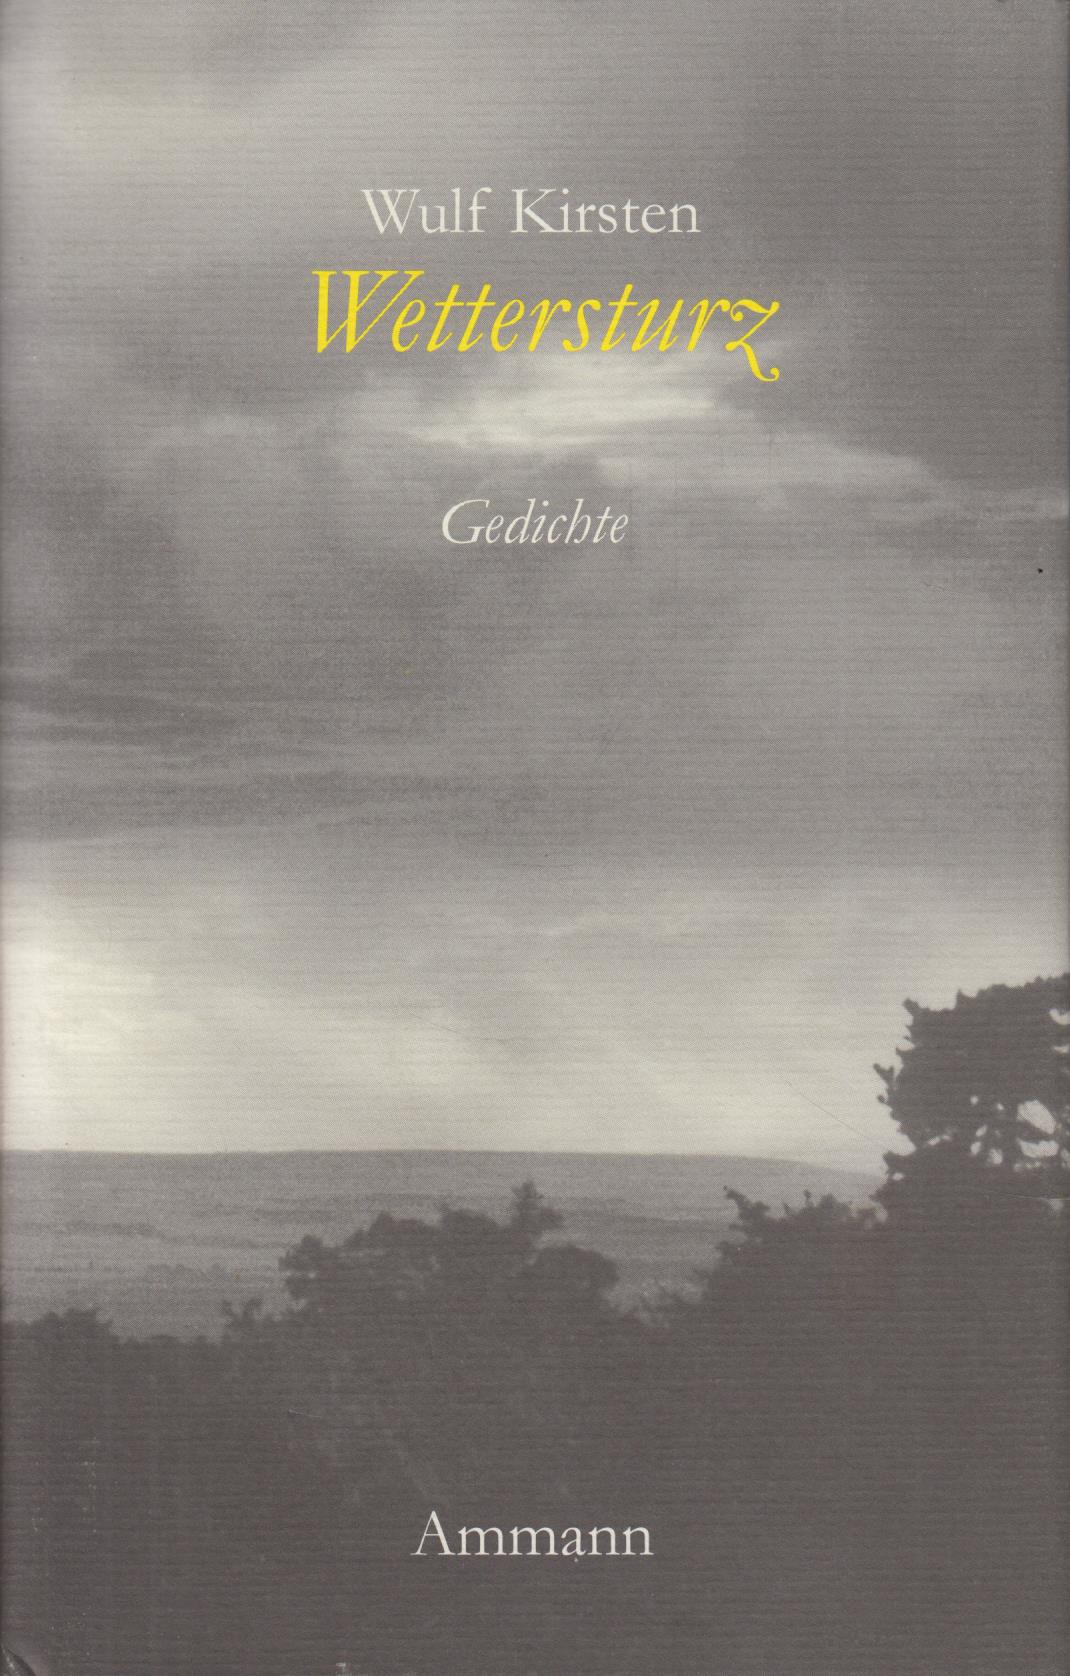 Wettersturz Gedichte 1993 - 1998 - Kirsten, Wulf